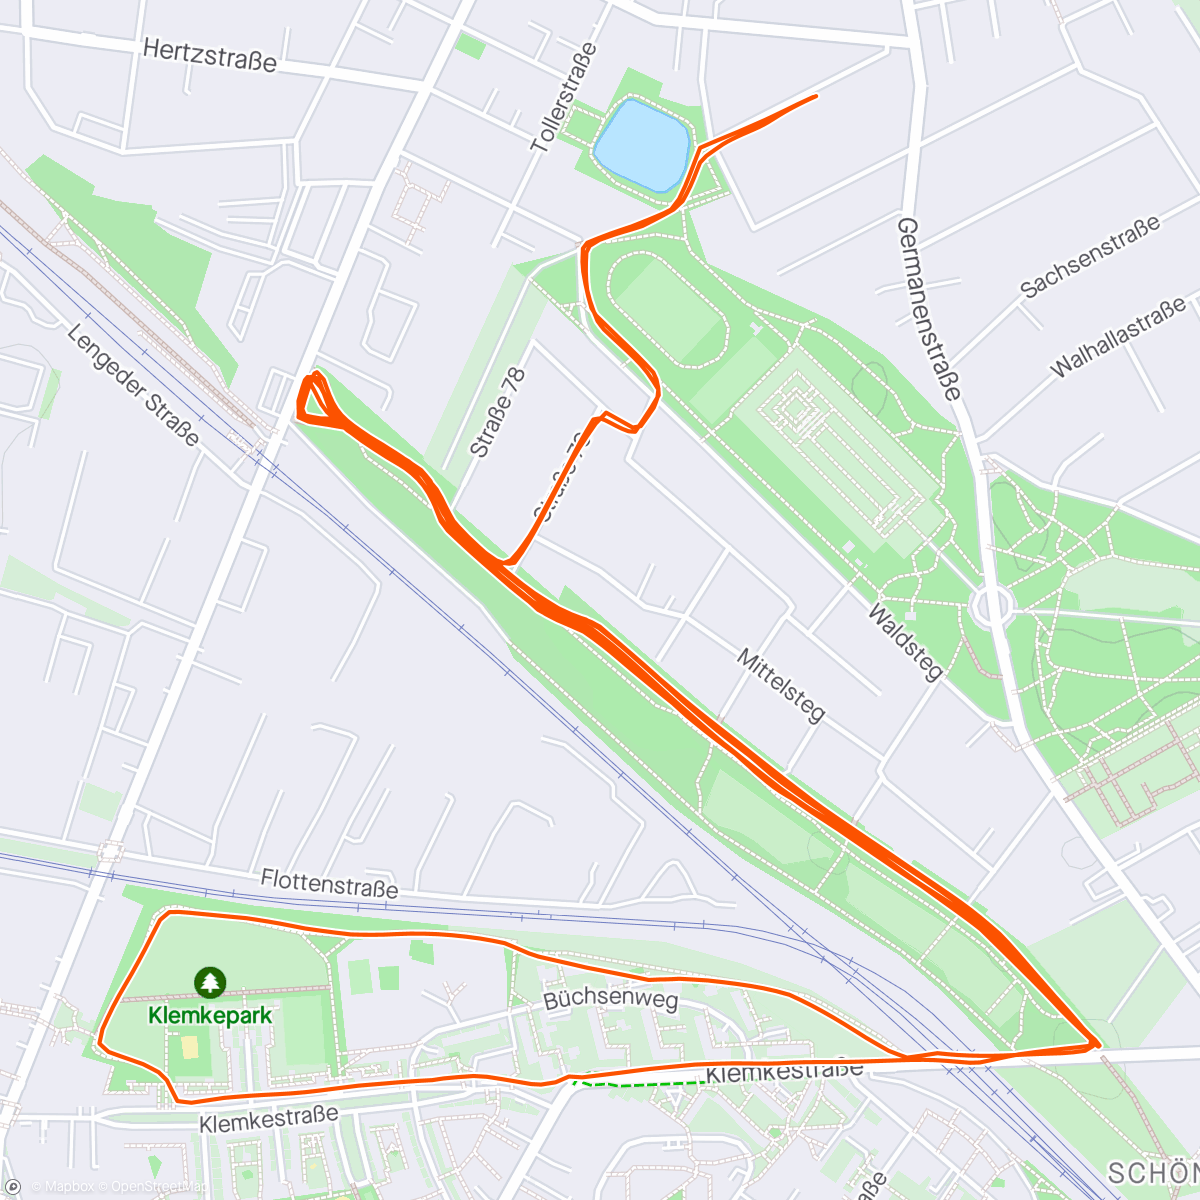 「15x (1min/1min) + 4km @4:04」活動的地圖